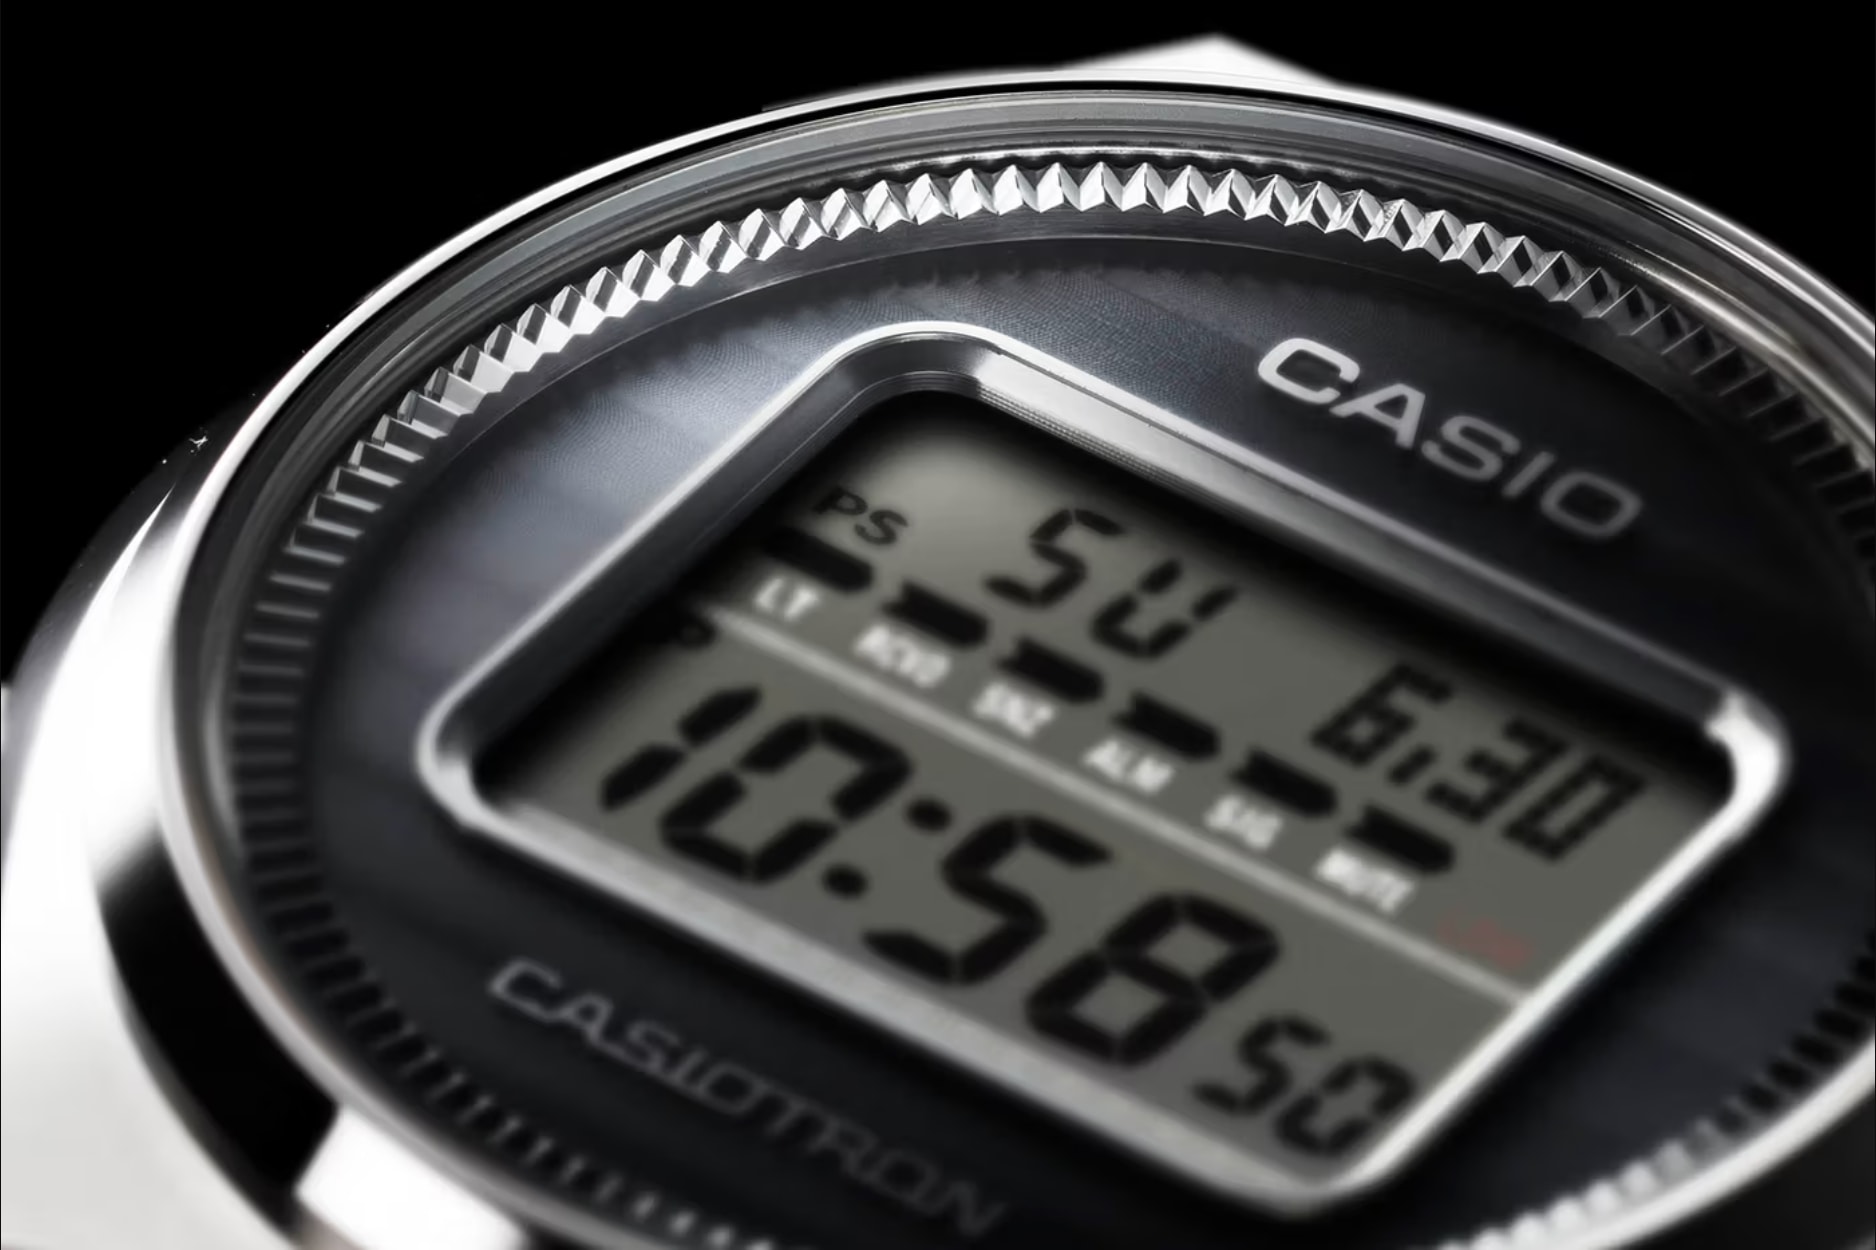 CASIO Timepiece 50 Year Anniversary Exhibition Event 41 division celebration casiotron g-shock